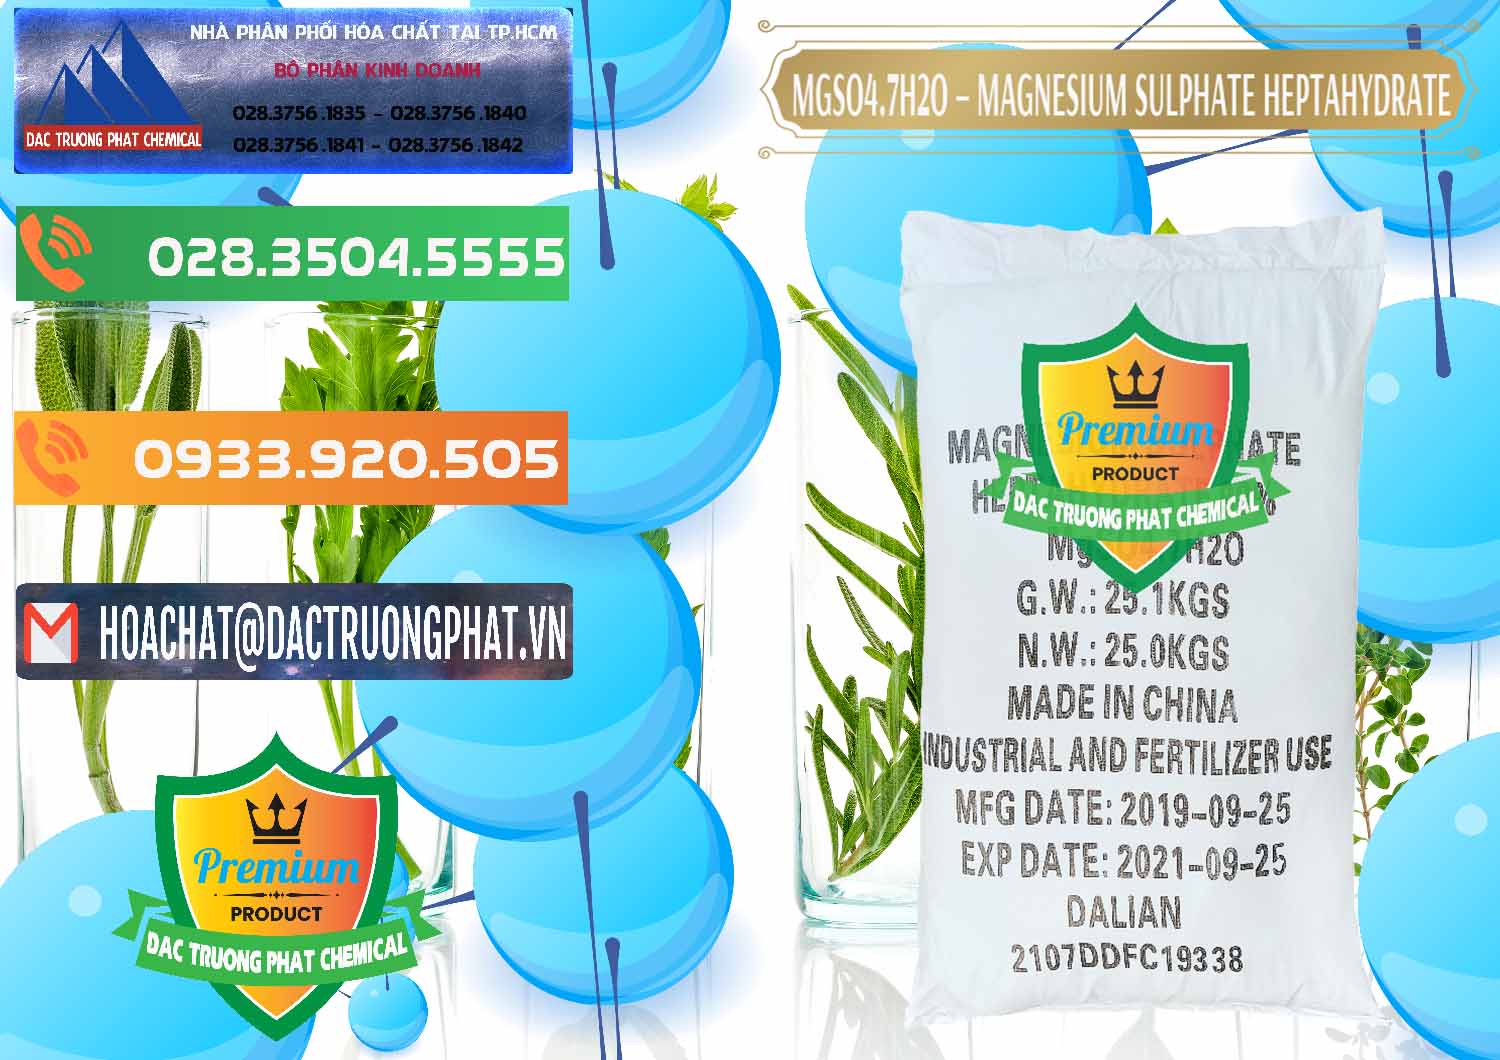 Cty bán _ cung cấp MGSO4.7H2O – Magnesium Sulphate Heptahydrate Trung Quốc China - 0094 - Đơn vị bán và phân phối hóa chất tại TP.HCM - hoachatxulynuoc.com.vn